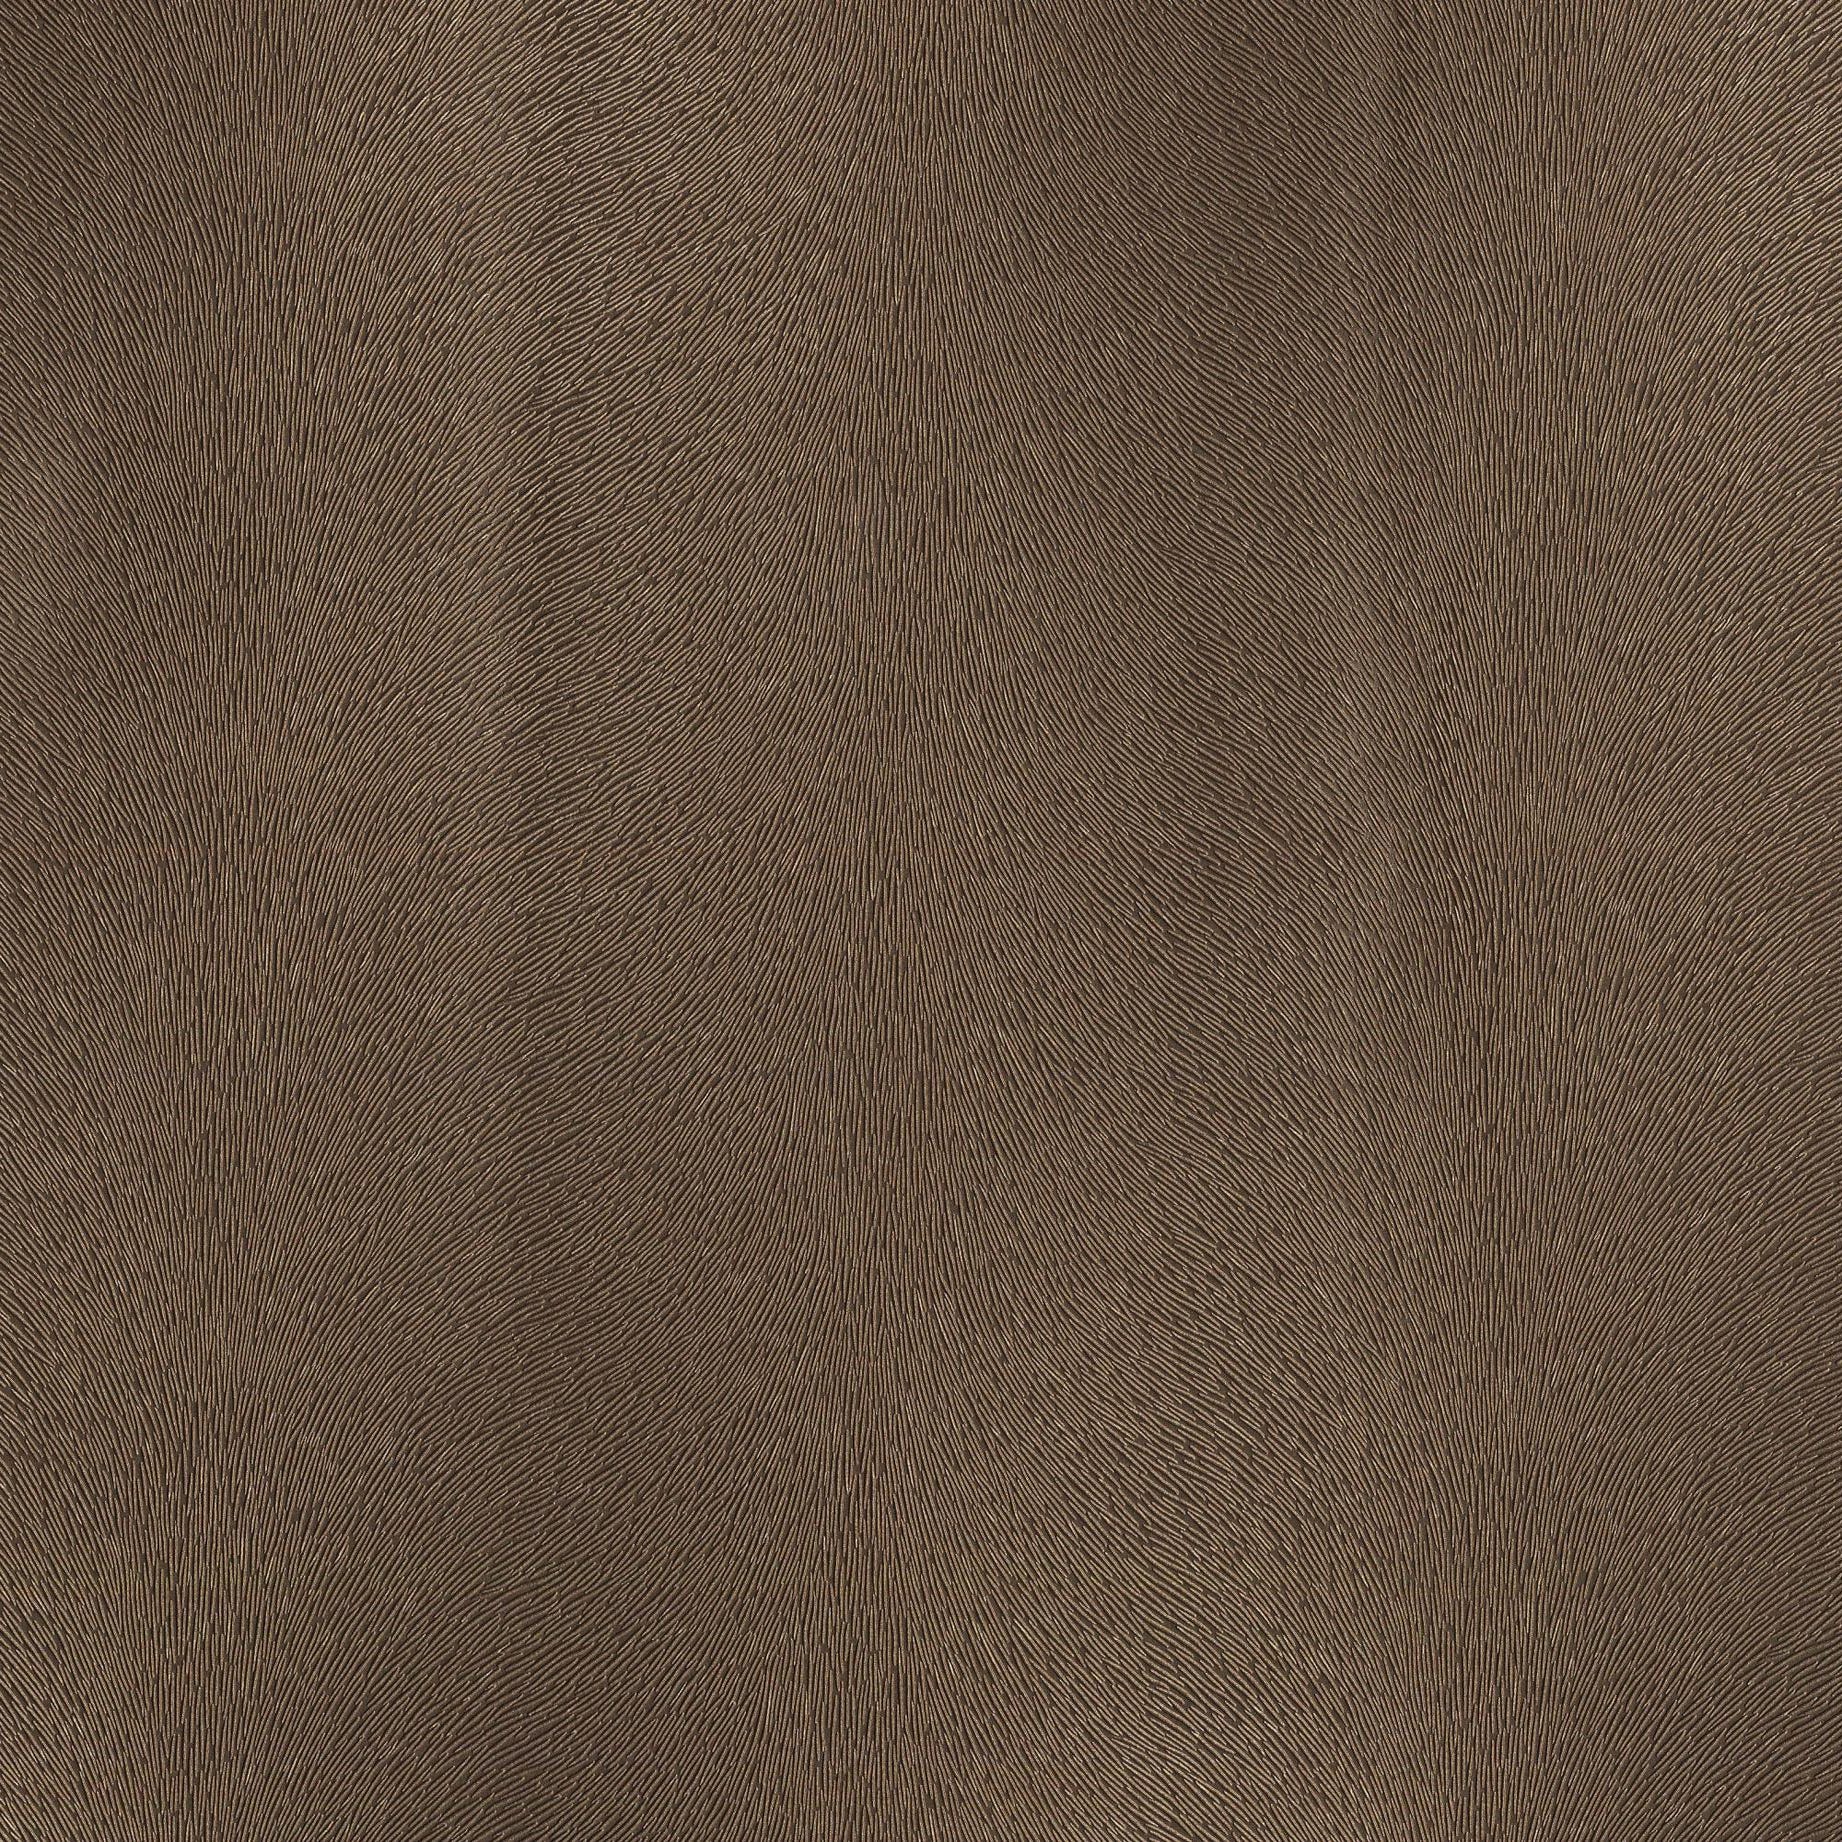 Tela al corte tapicería imitación piel Cannes marrón ancho 140 cm